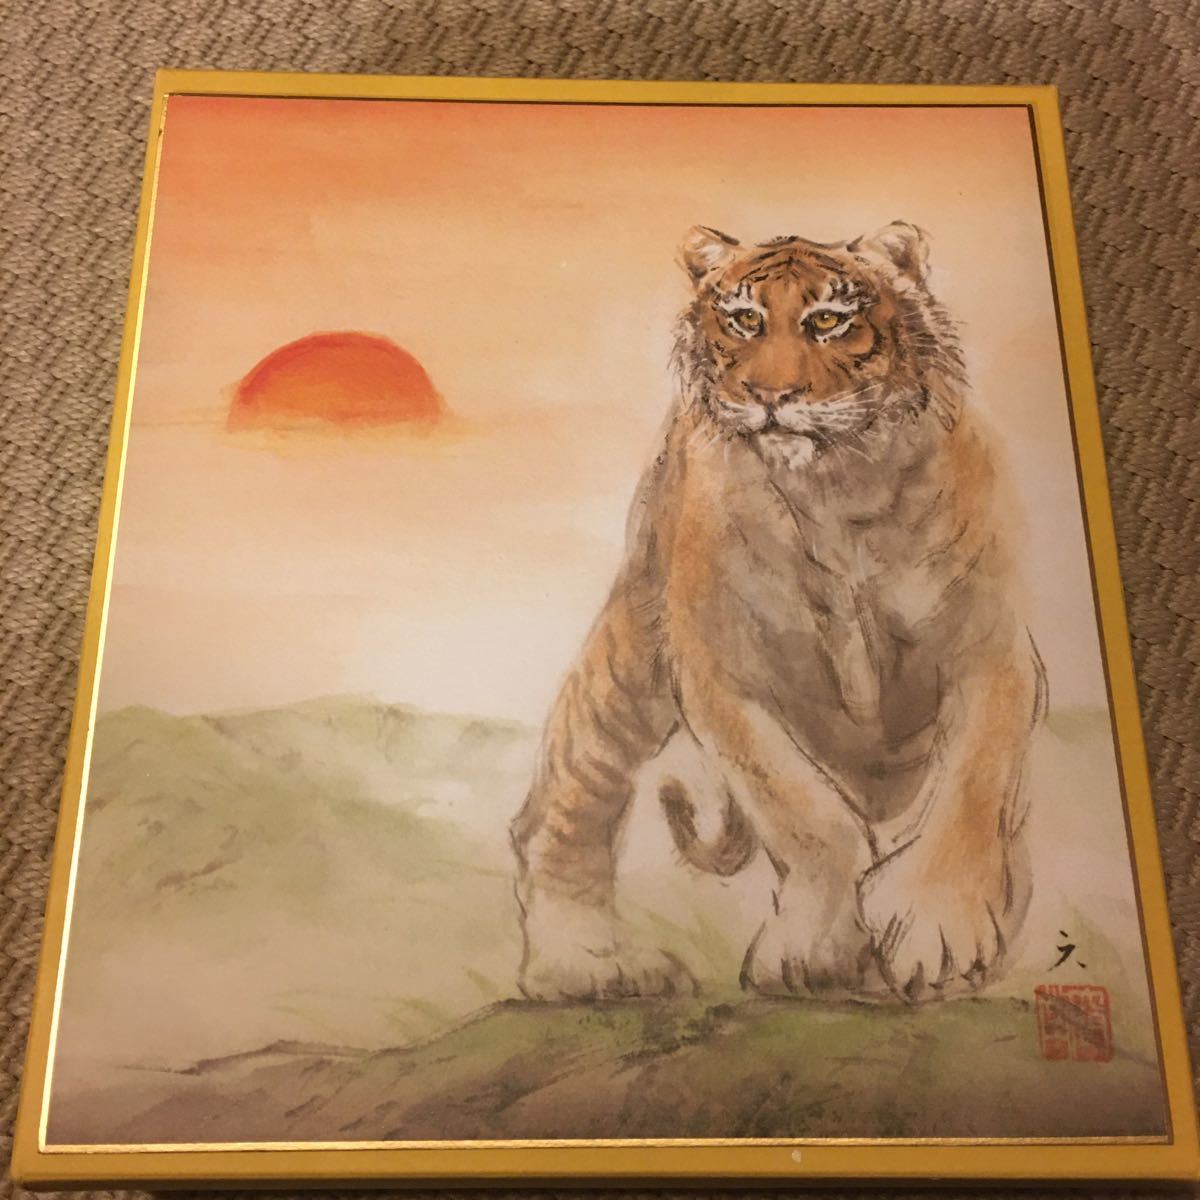 Achetez-le maintenant Fujiwara Rokugen-do Zodiac Shikishi Tiger Reproduction Shikishi Peinture japonaise Peinture Zodiac Tiger Shipping \230, Ouvrages d'art, livre, papier coloré